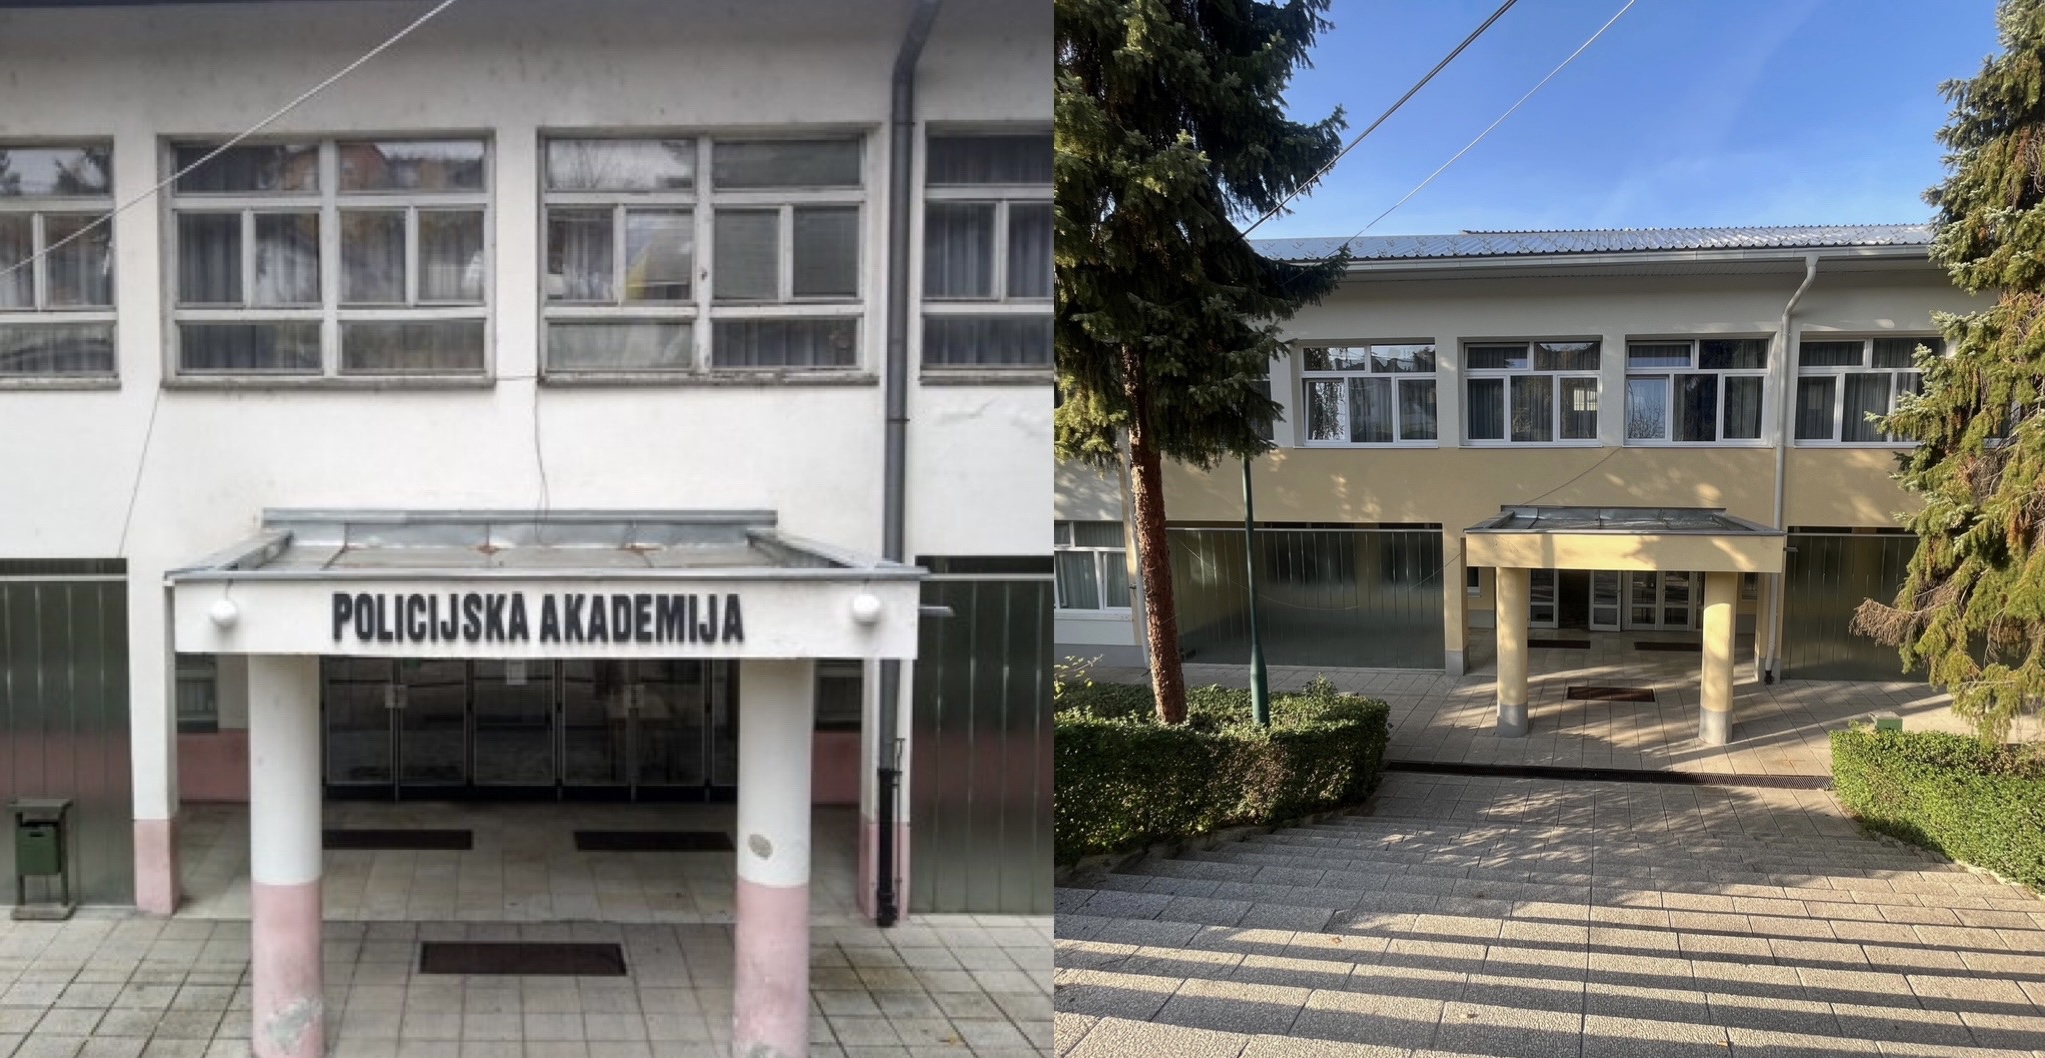 Policijskoj akademiji FMUP-a završeno utopljavanje zgrade u Sarajevu dvije fotografije zgrade Policijske akademije lijevo je kakva je nekad bilabijela stari prozori oštećena fasada a desno obnovljena nova žuta fasada na ulazu piše Policijska akademija